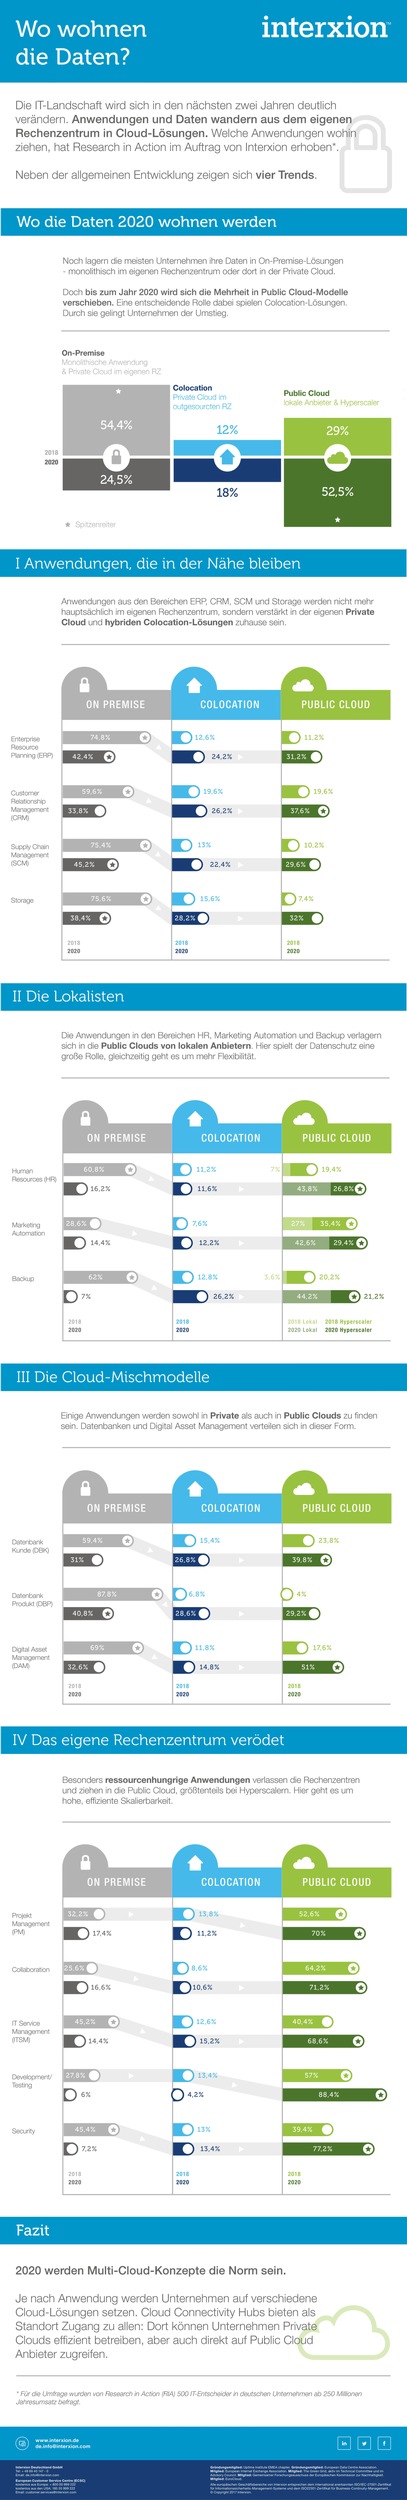 Studie: Cloud Trends 2020 - Wo wohnen die Daten?